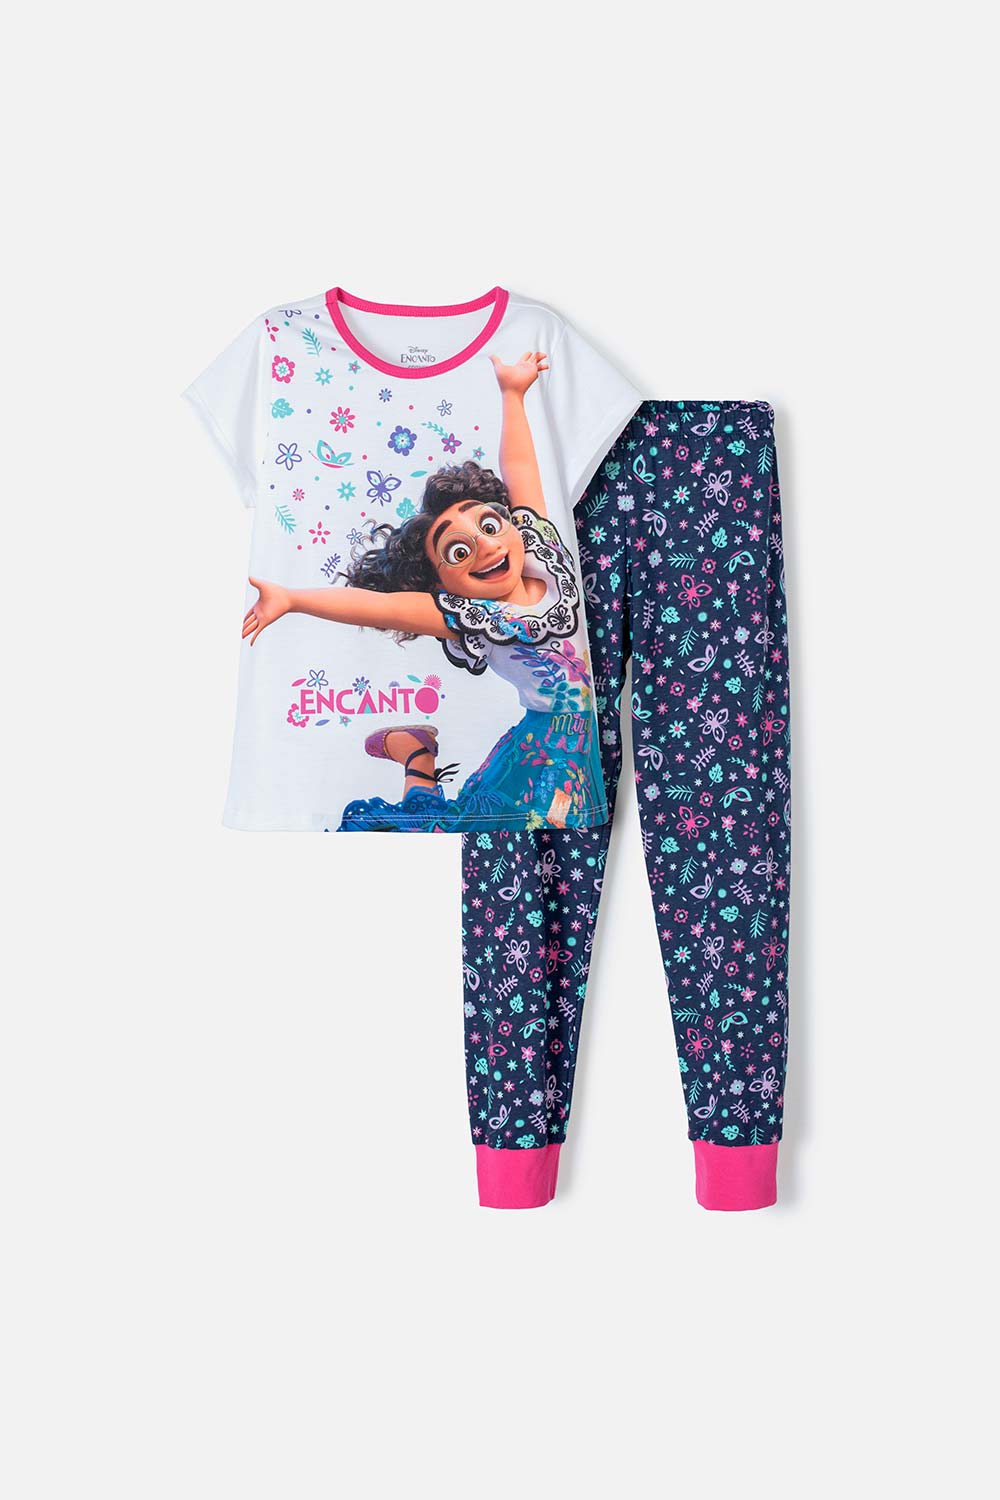 Pijama de manga corta con personajes de Disney